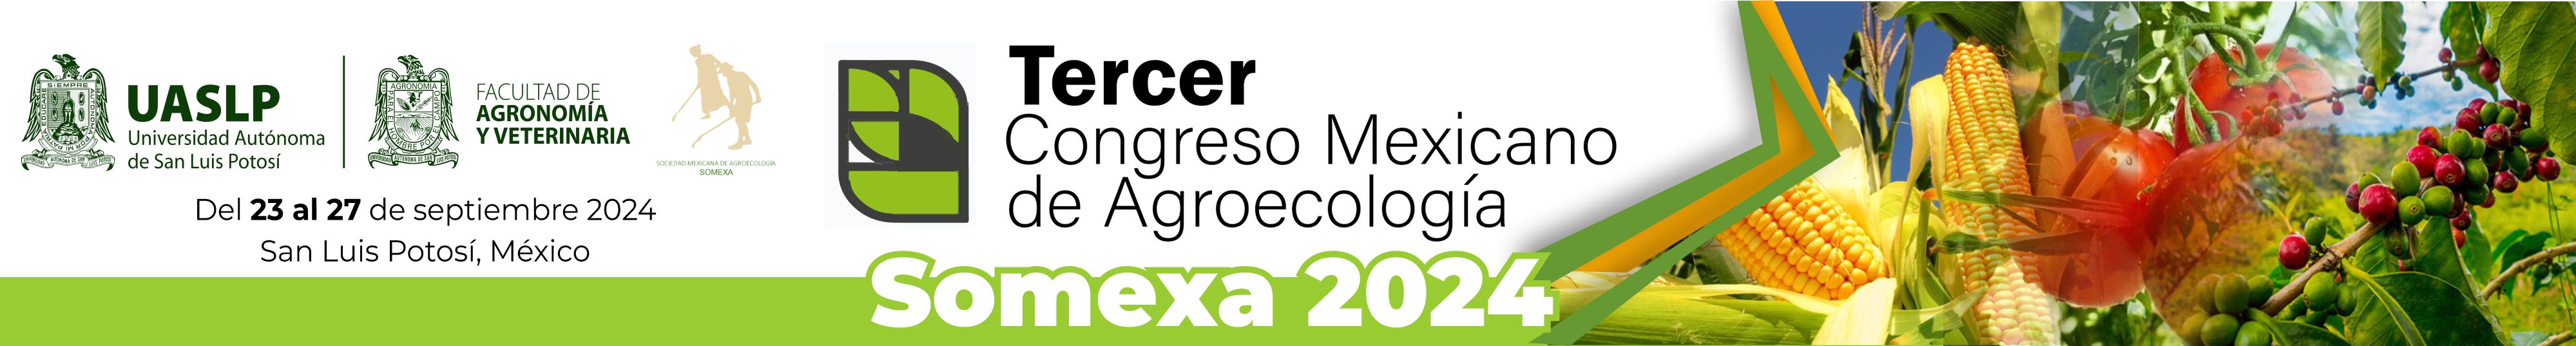 Congreso de Agroecología